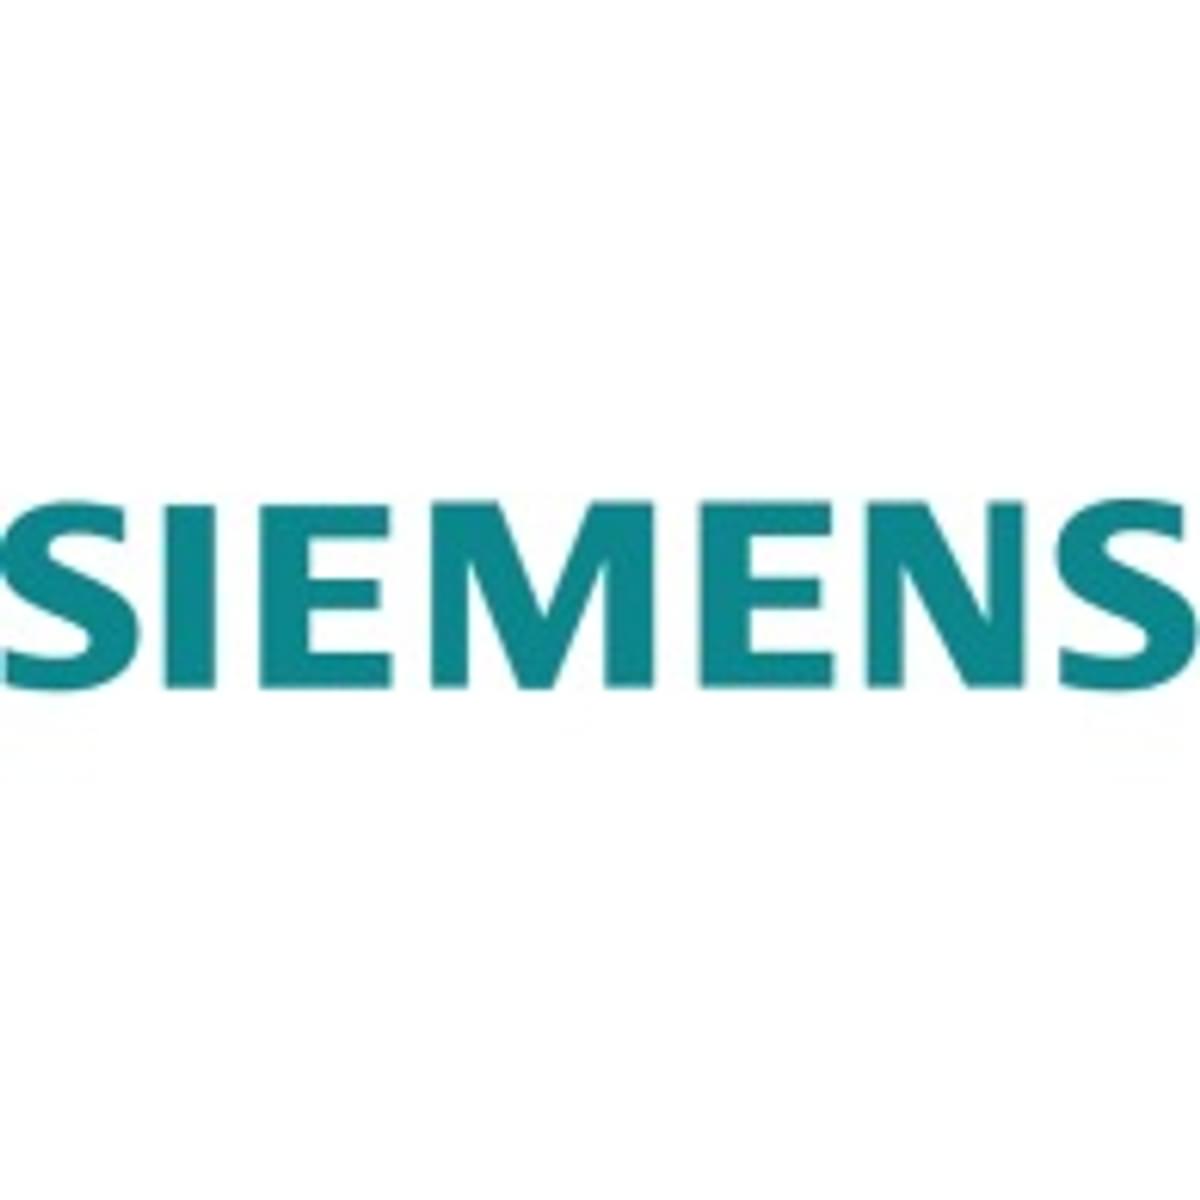 Siemens koopt printing specialist image